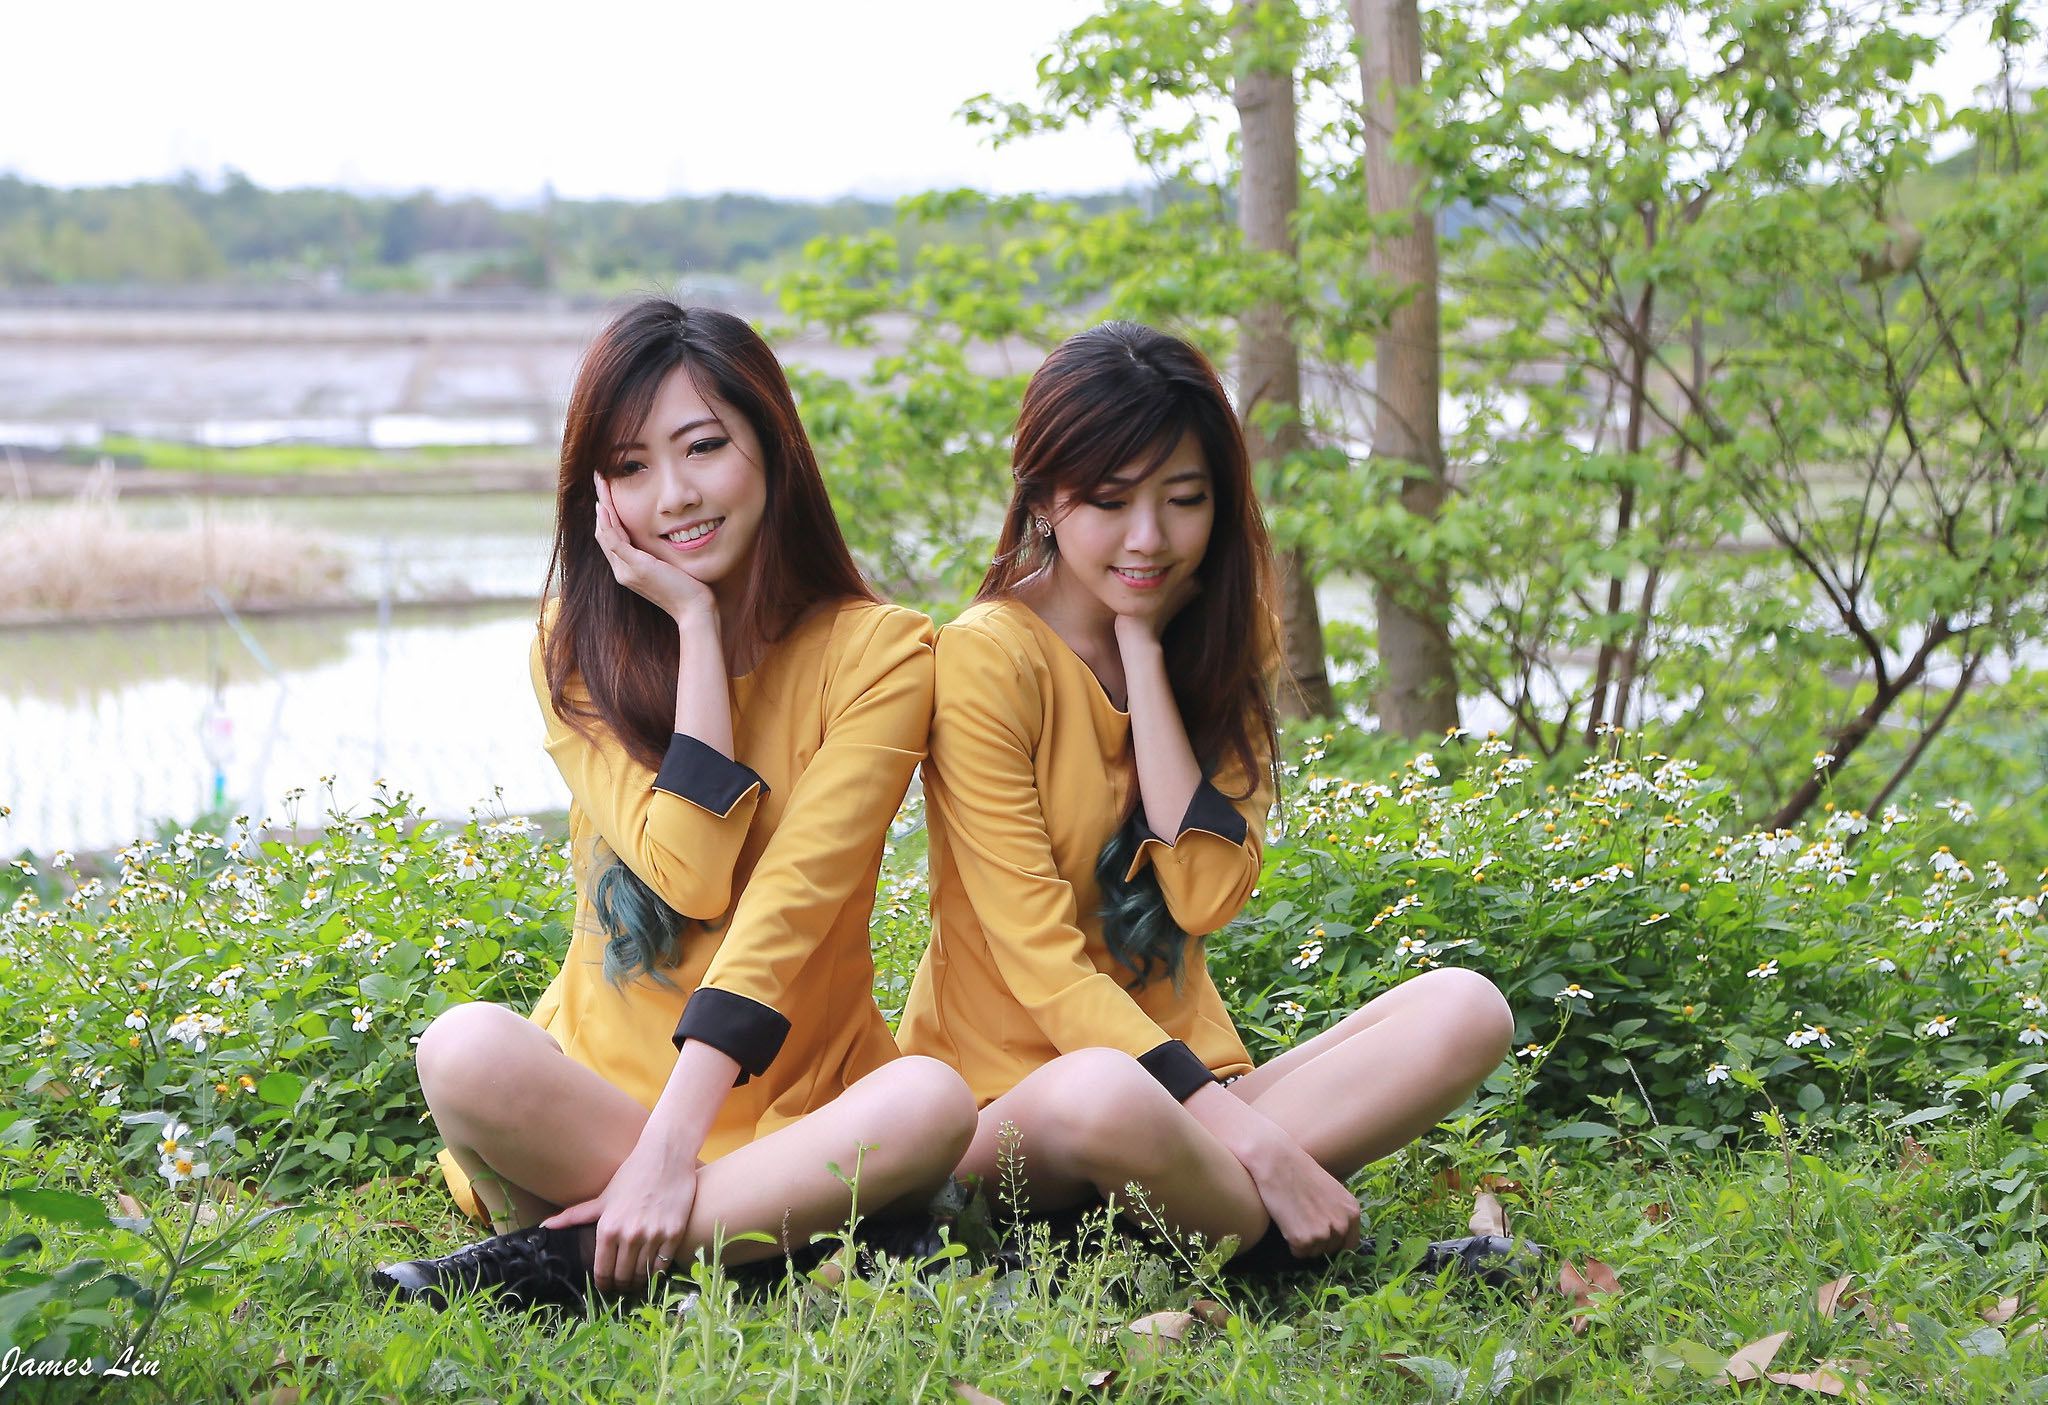 极品清纯甜美台湾双胞胎姐妹花清新外拍写真集2